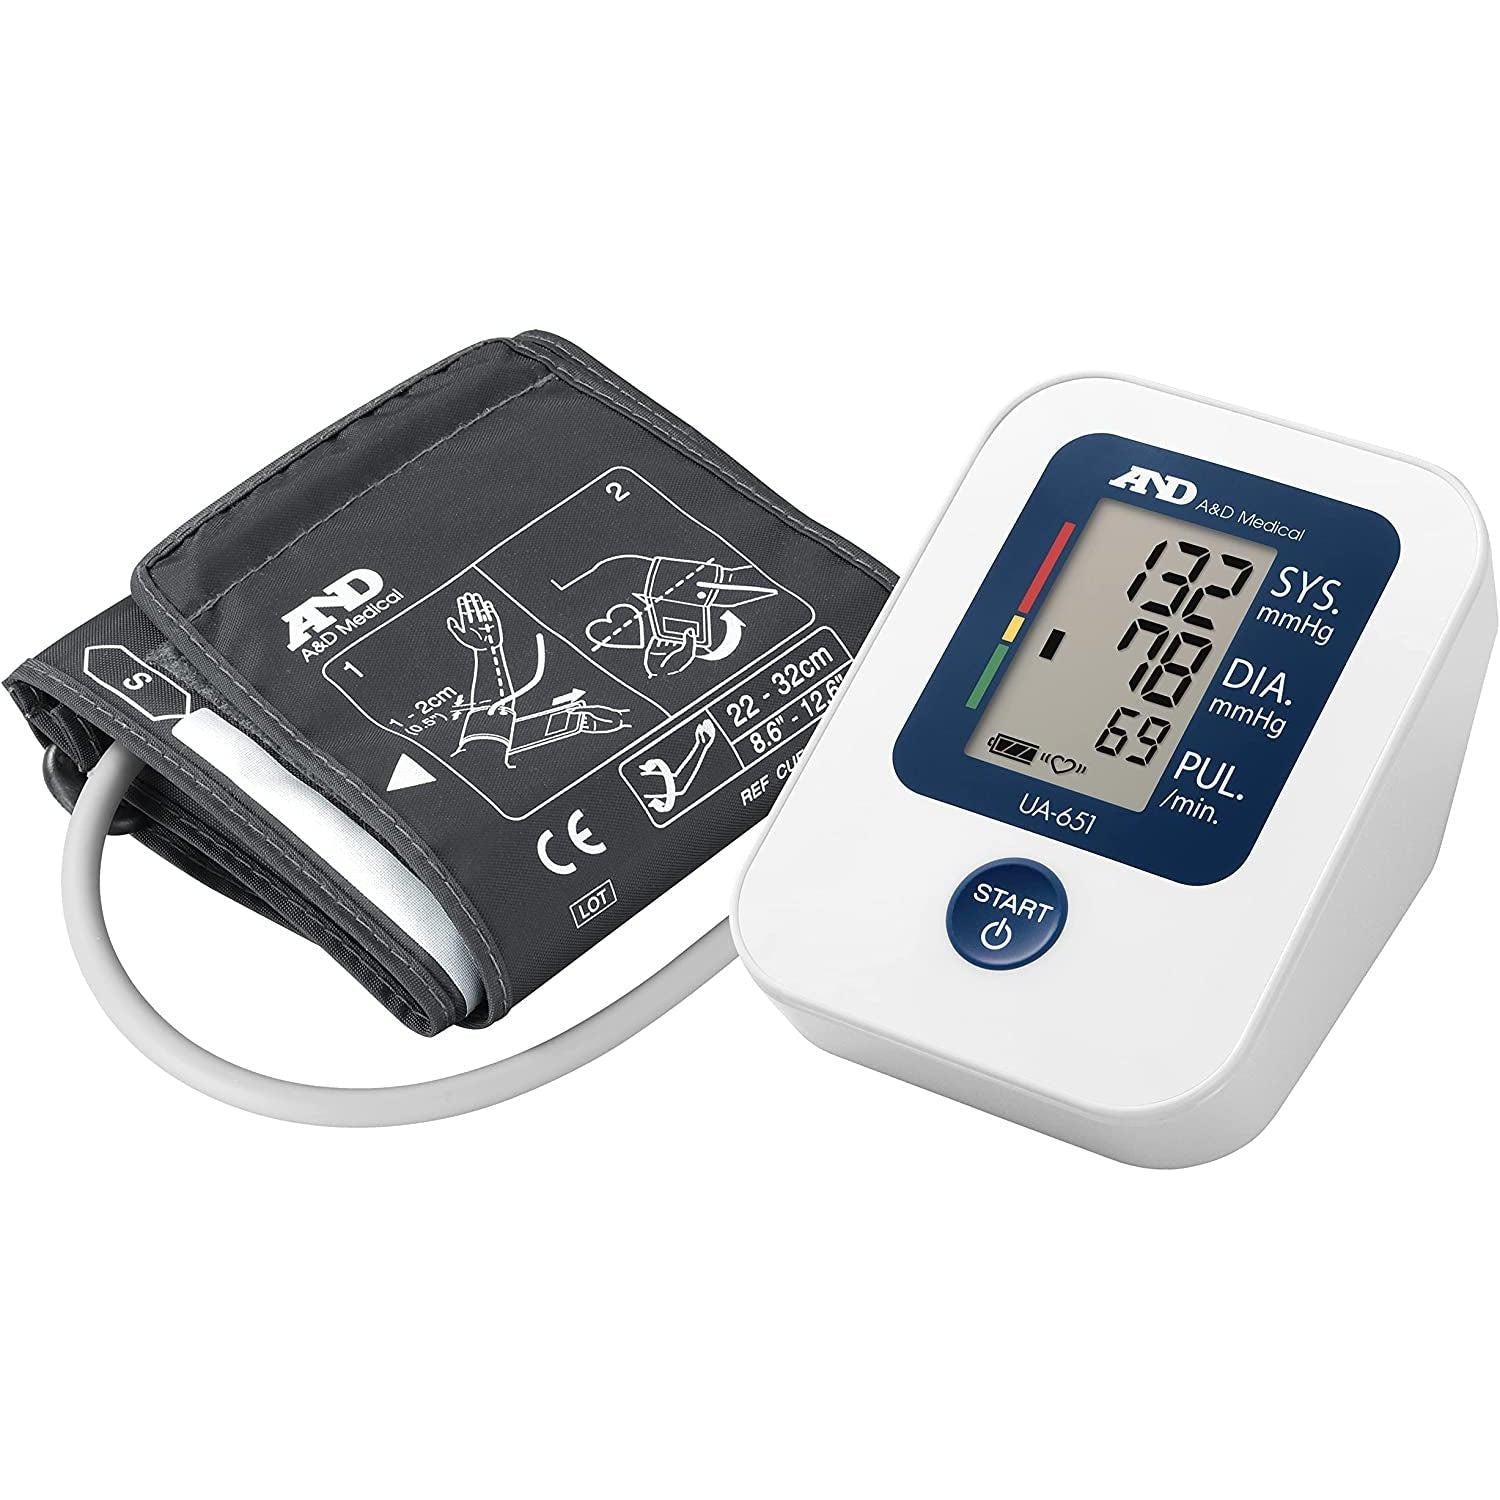 A&D Medical UA-651 Upper Arm Blood Pressure Monitor - Healthxpress.ie